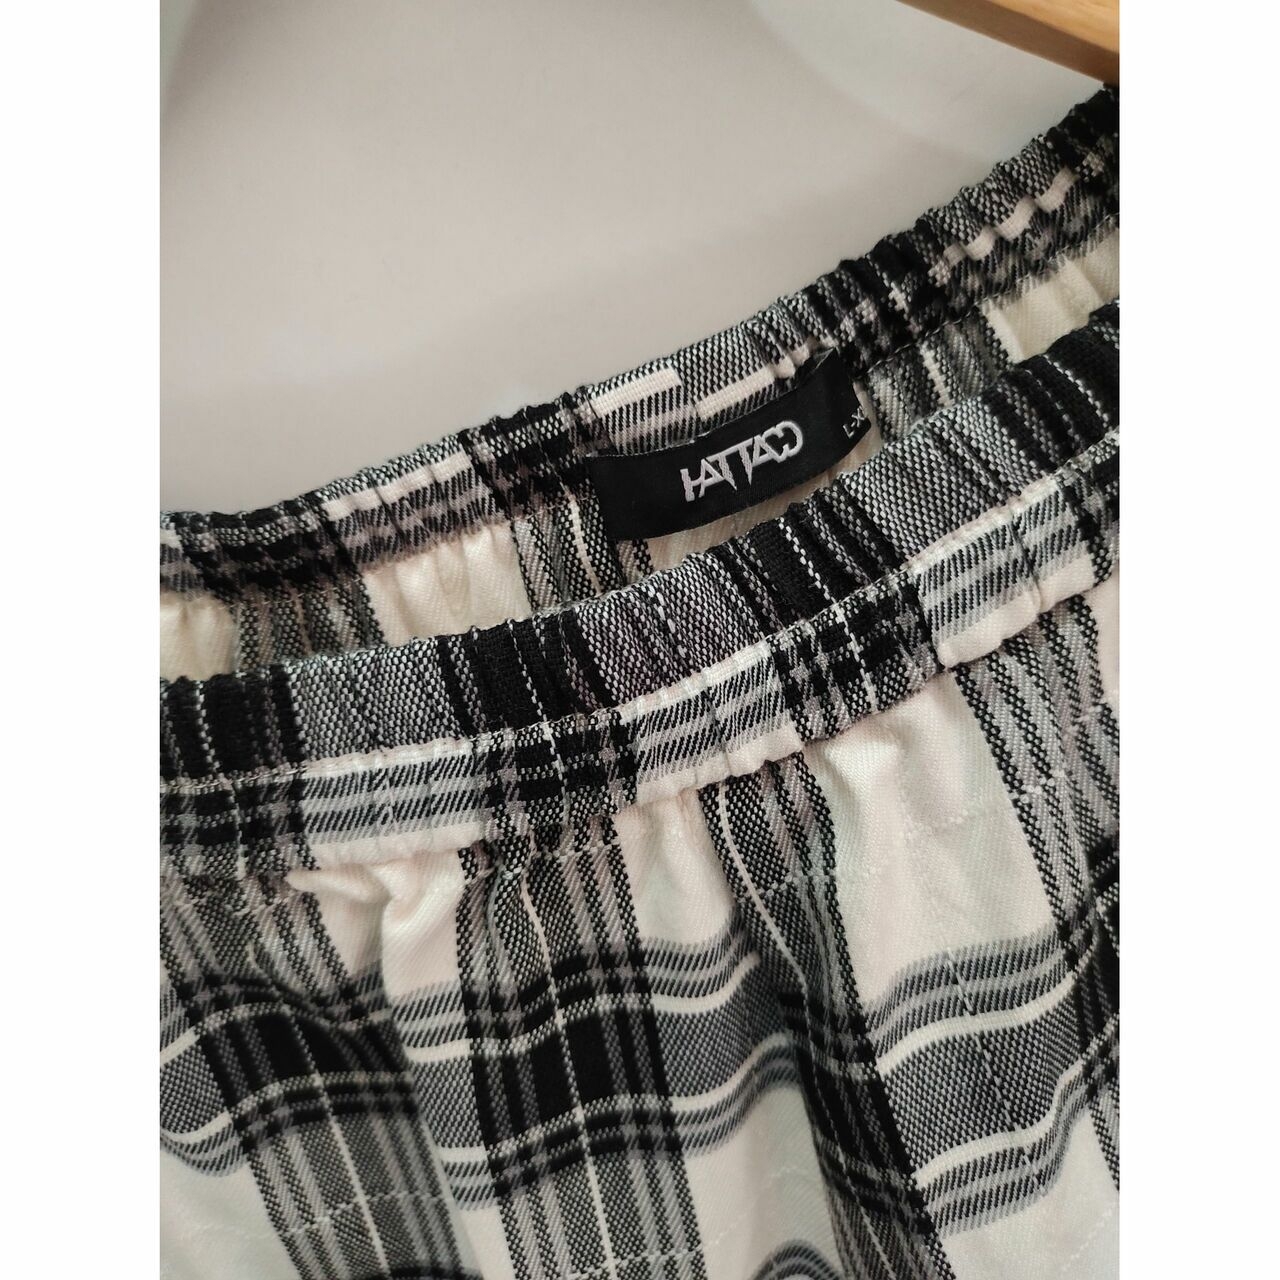 Hattaco Black & White Plaid Maxi Skirt